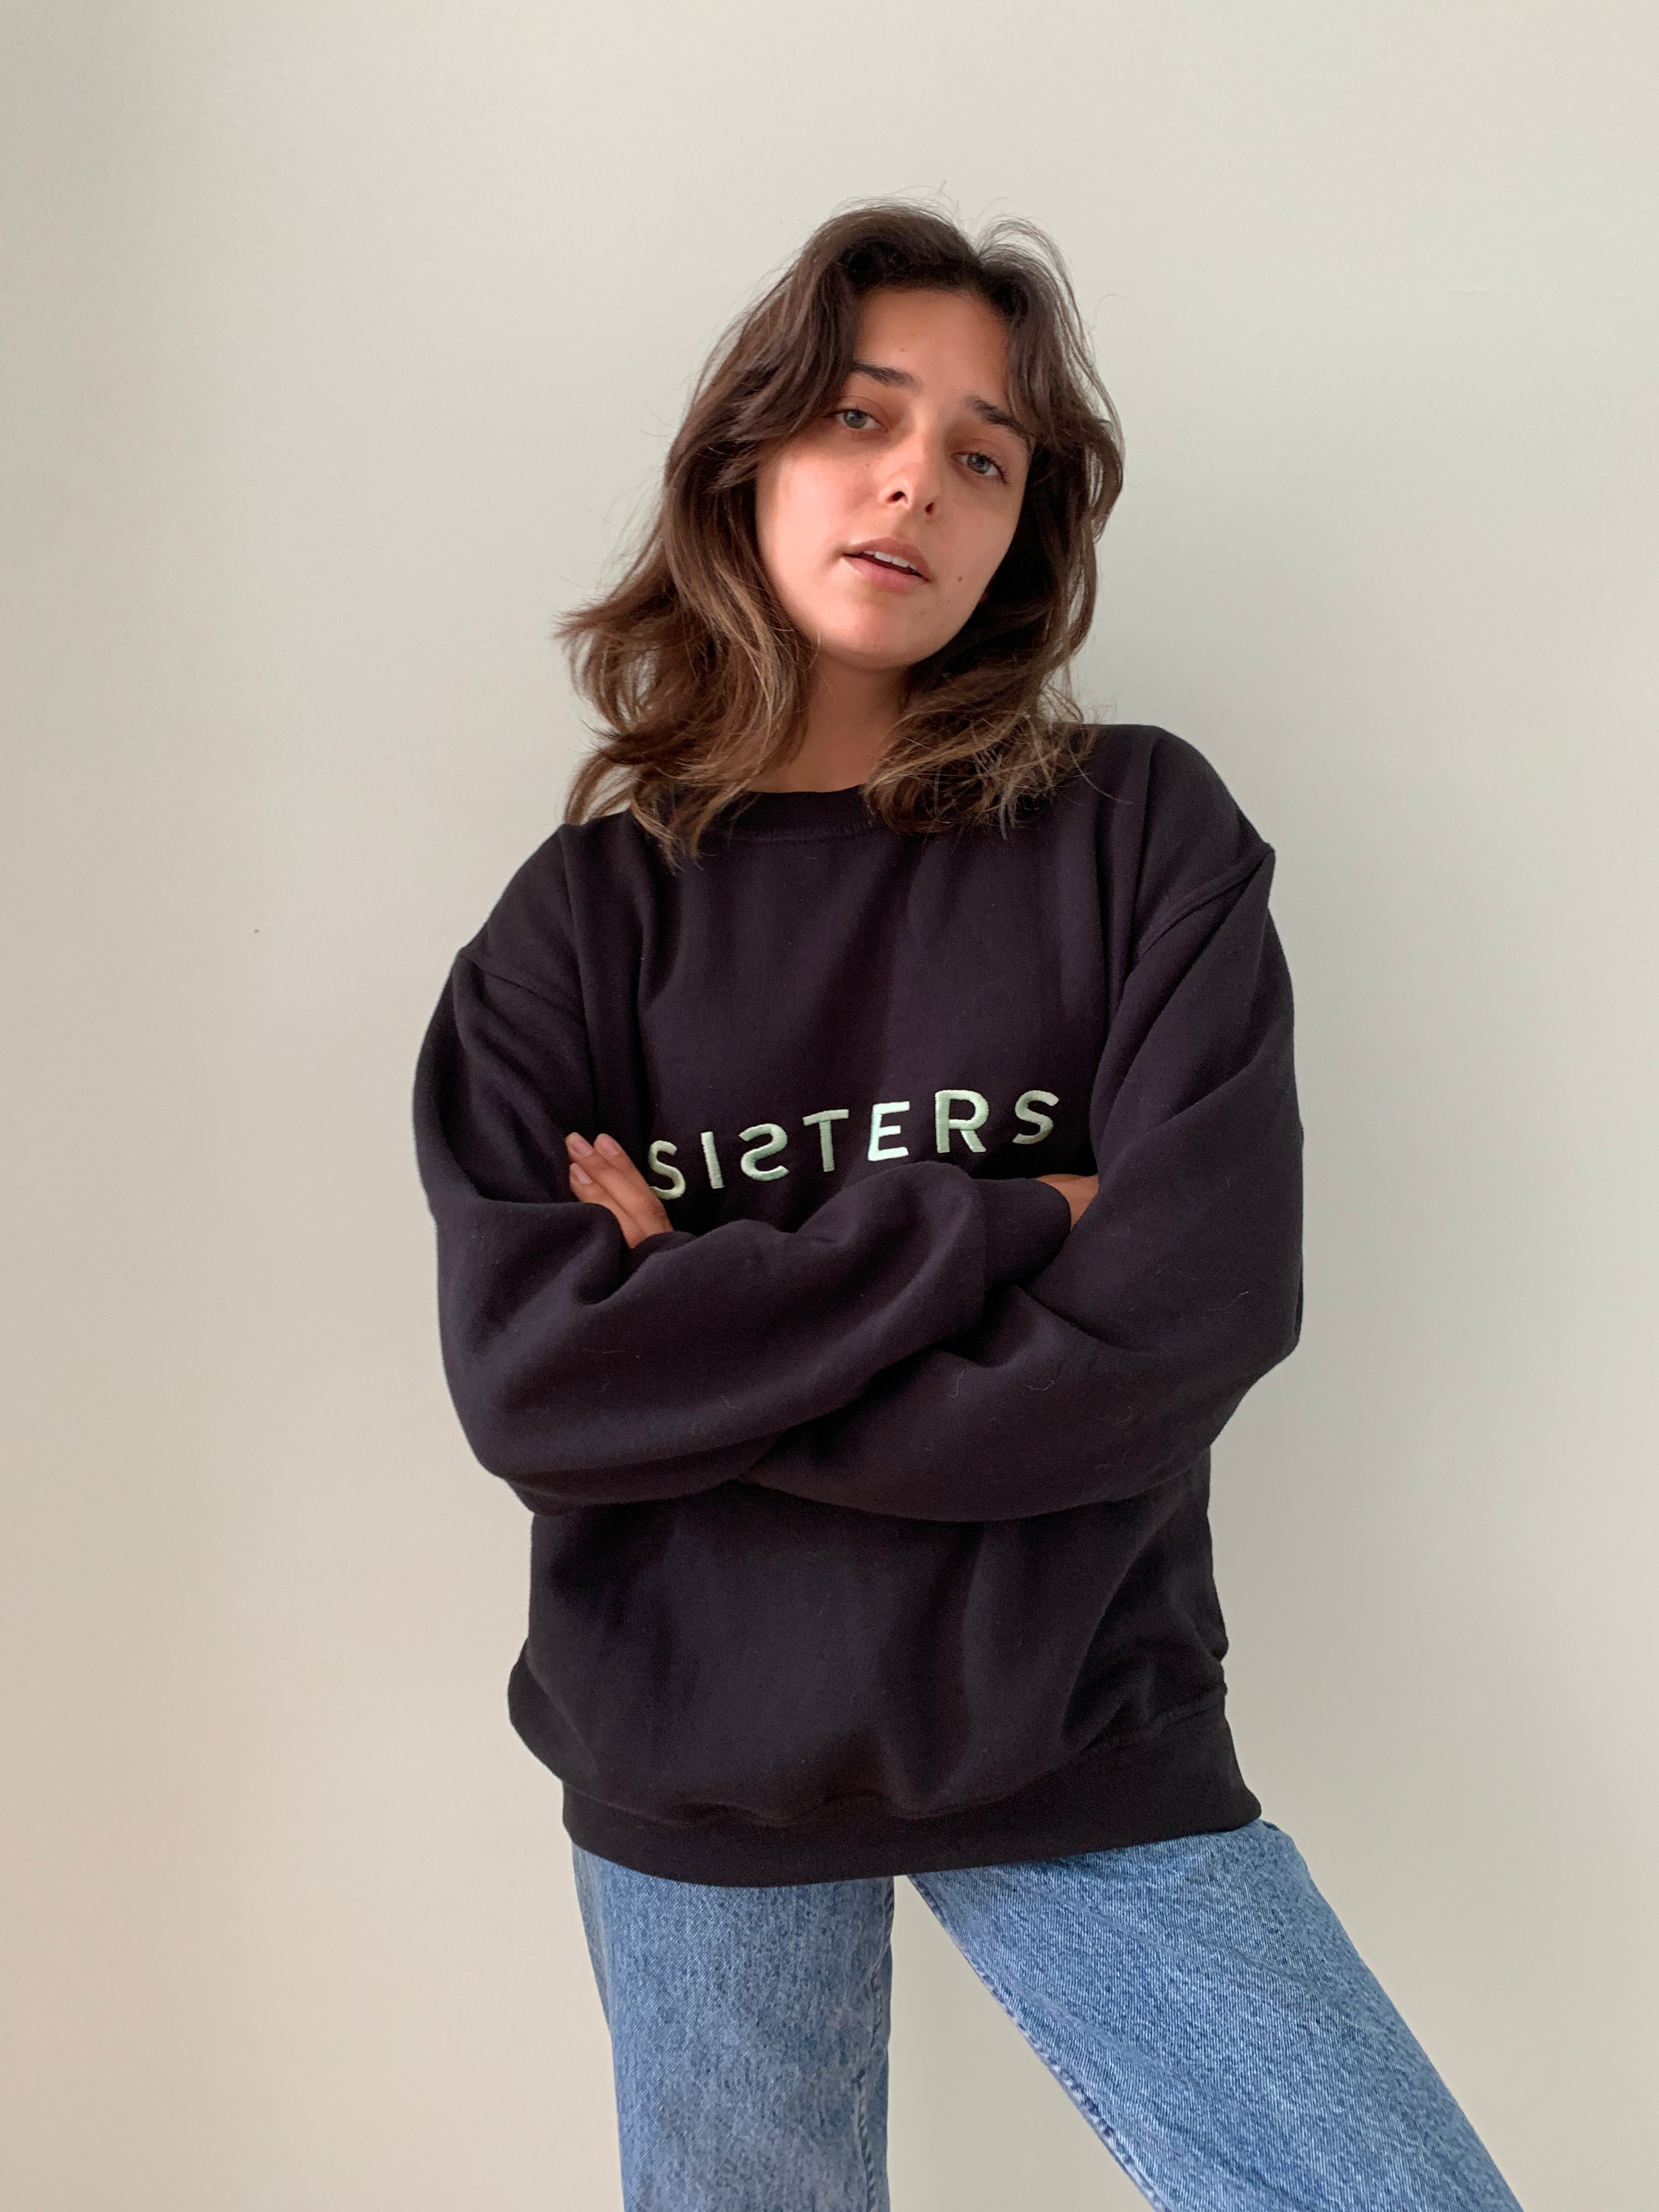 SISTERS embroidered sweatshirt medium / large SS208